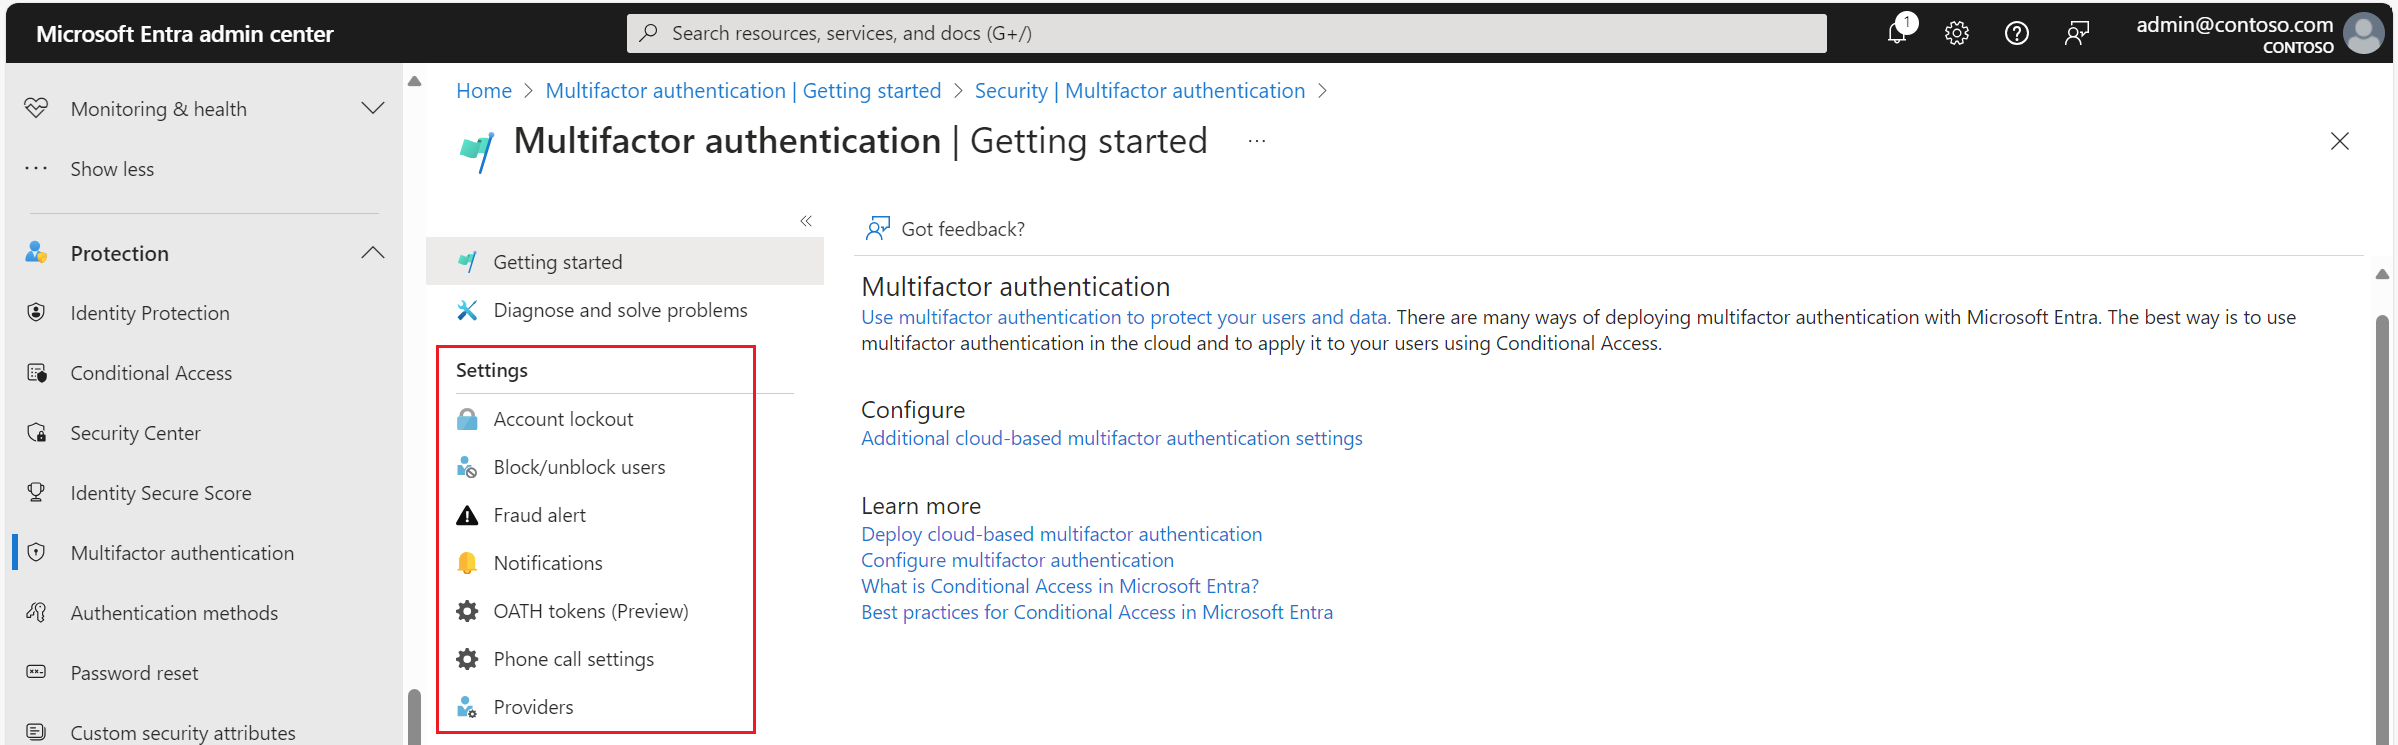 Einstellungen für Microsoft Entra Multifactor Authentication